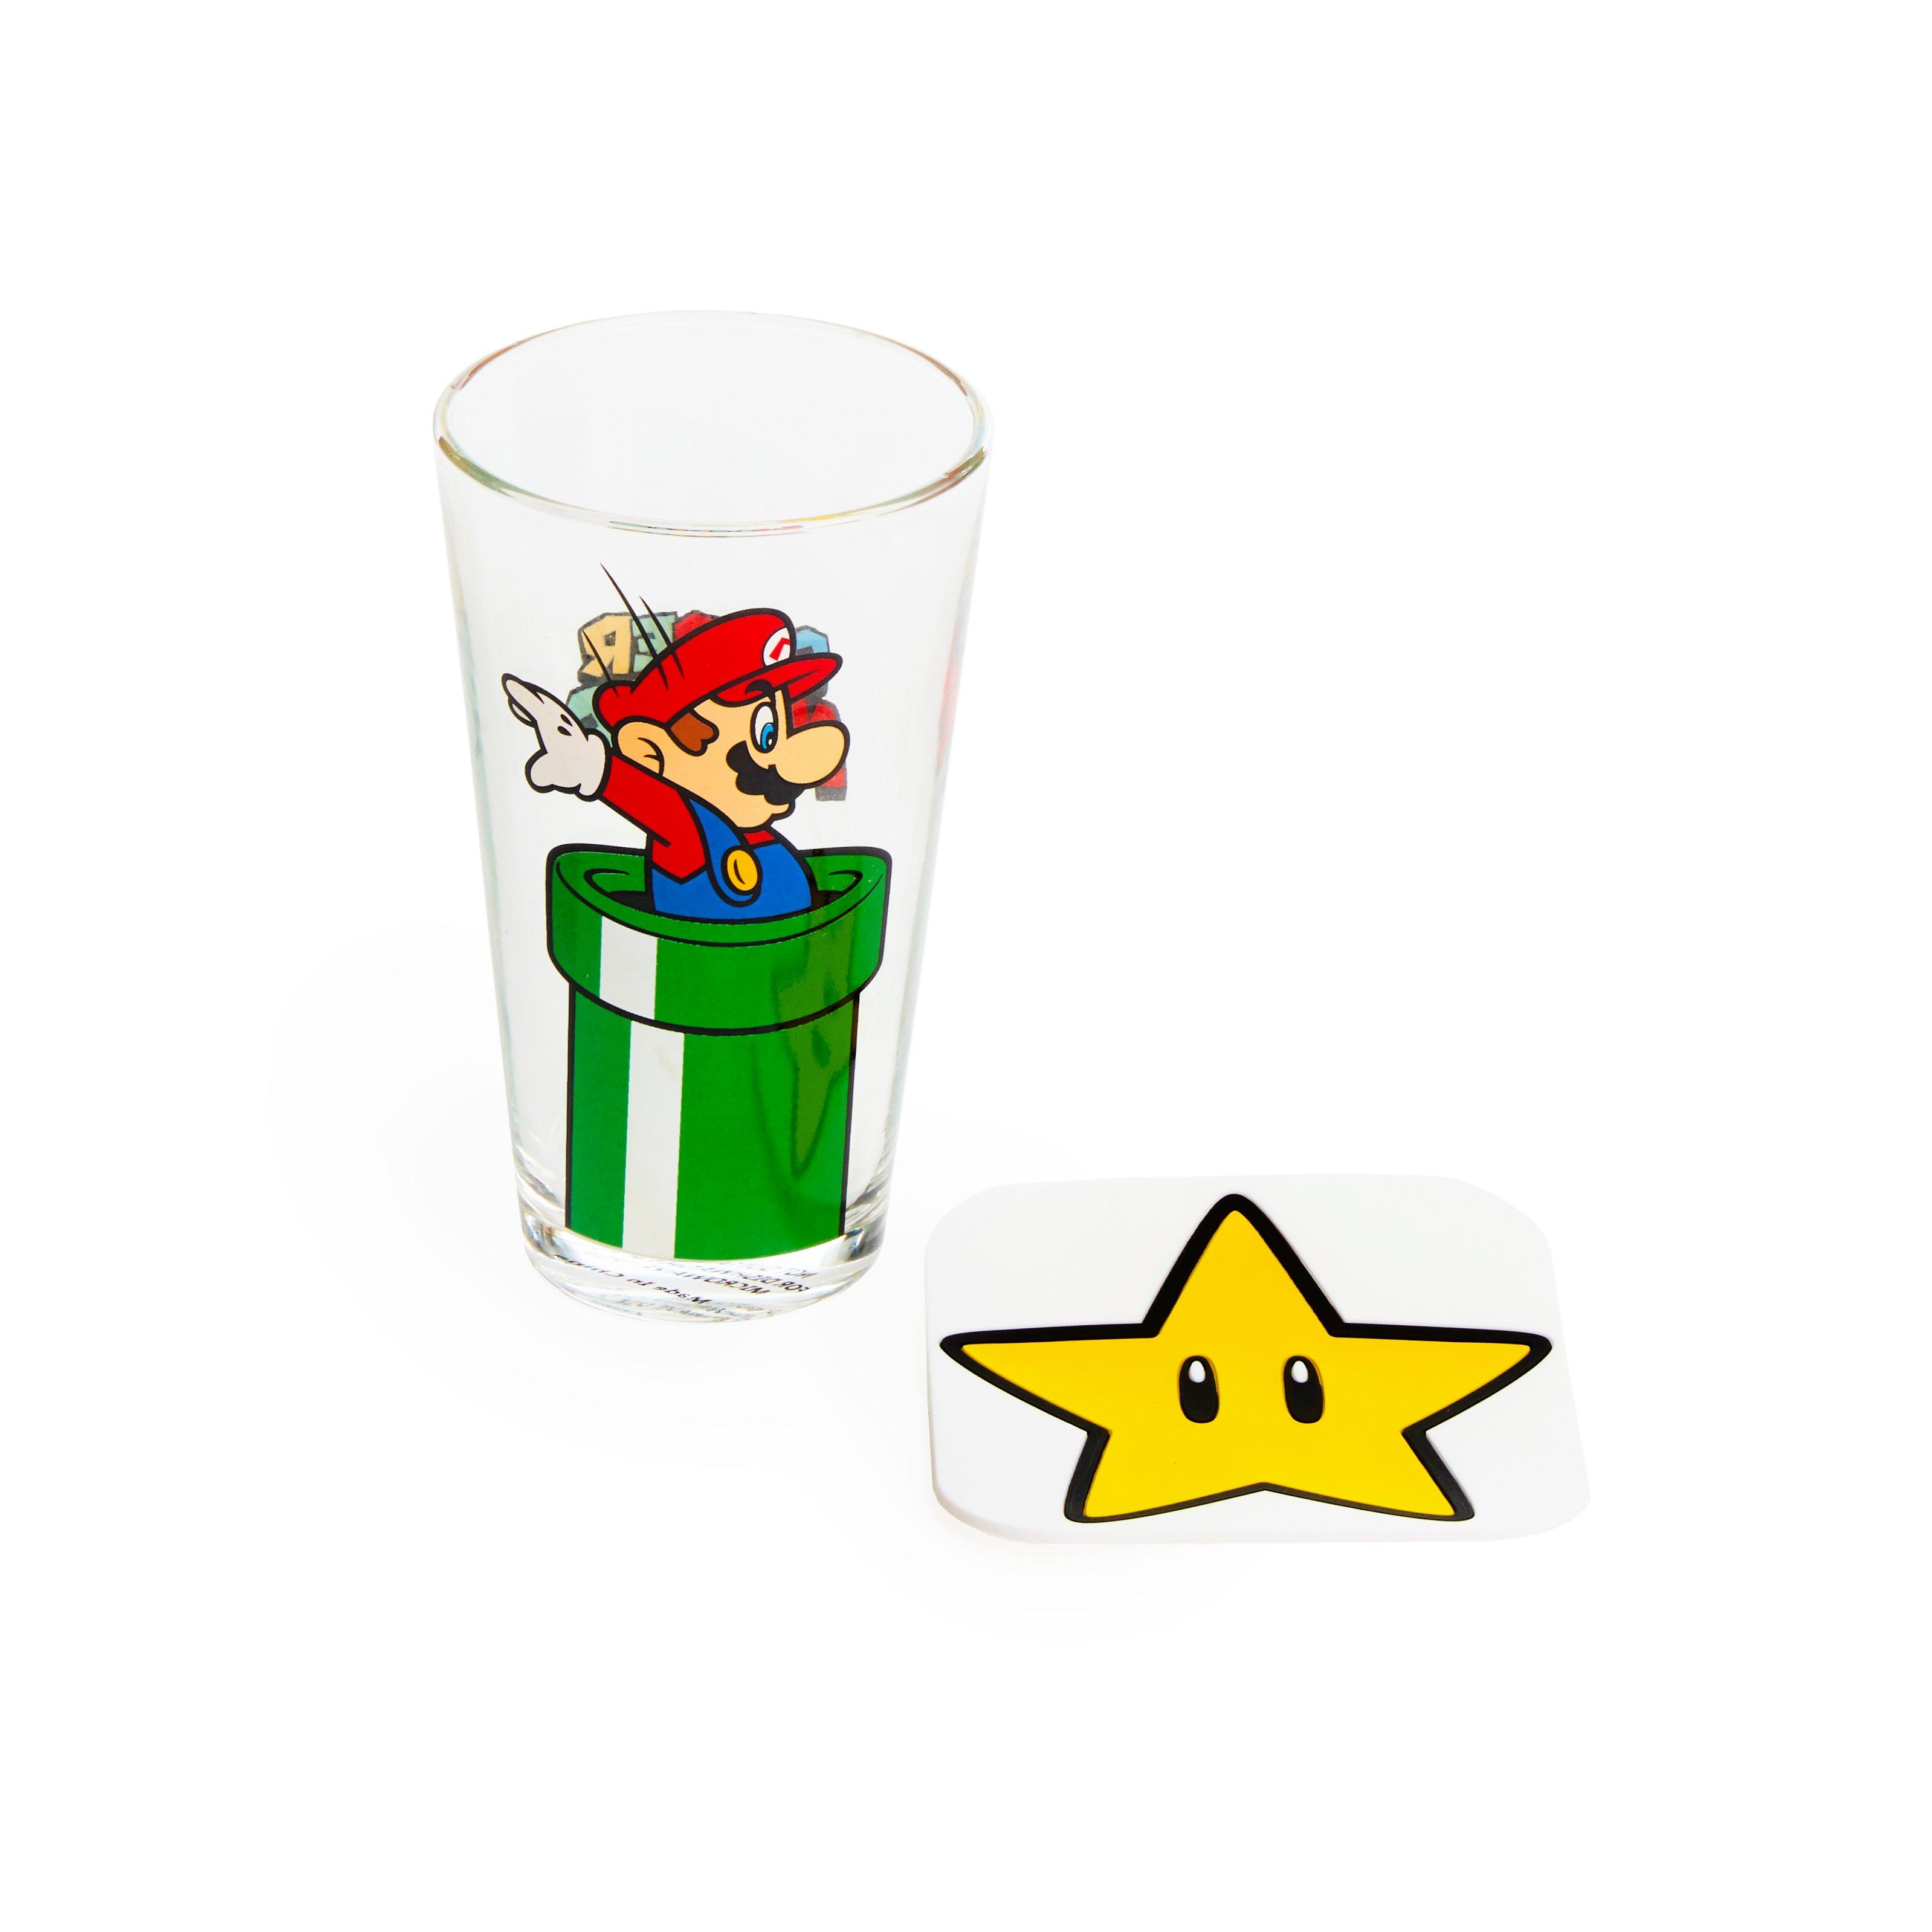 https://media.gamestop.com/i/gamestop/11121329_ALT02/Geeknet-Nintendo-Super-Mario-Action-Drinkware-Set-GameStop-Exclusive?$pdp$